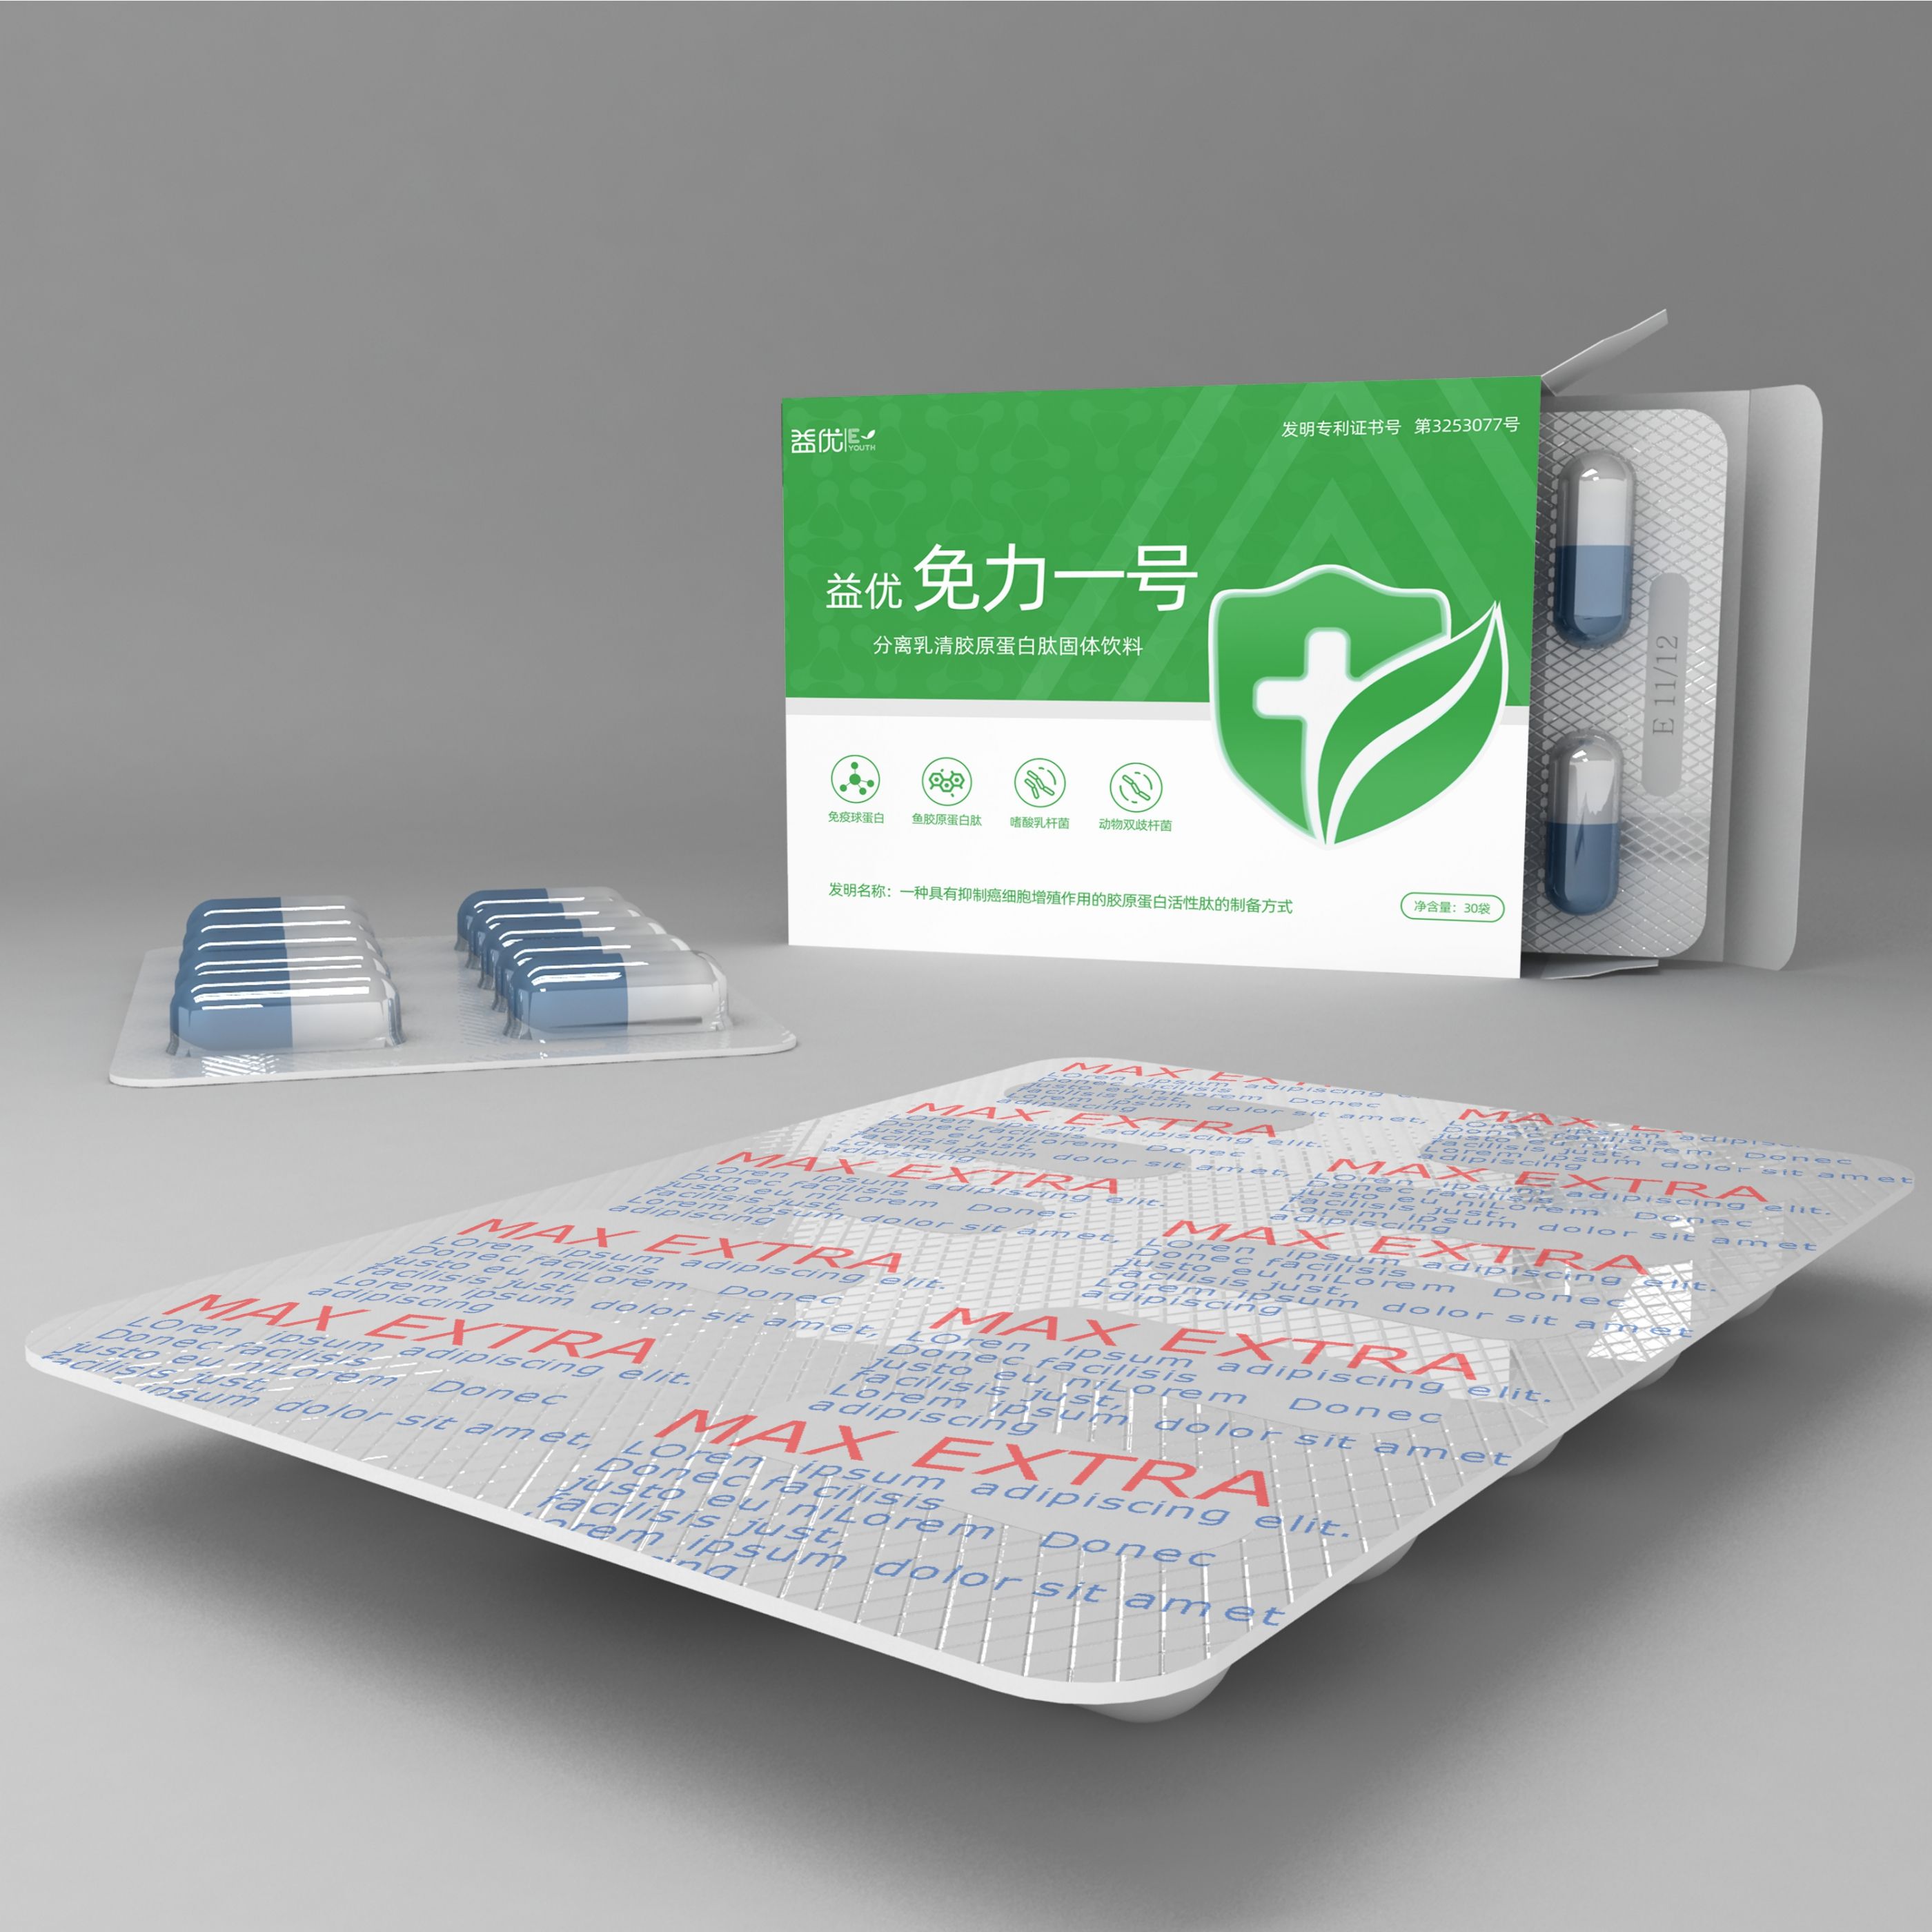 药品外盒包装设计 飞特网 原创药品包装设计